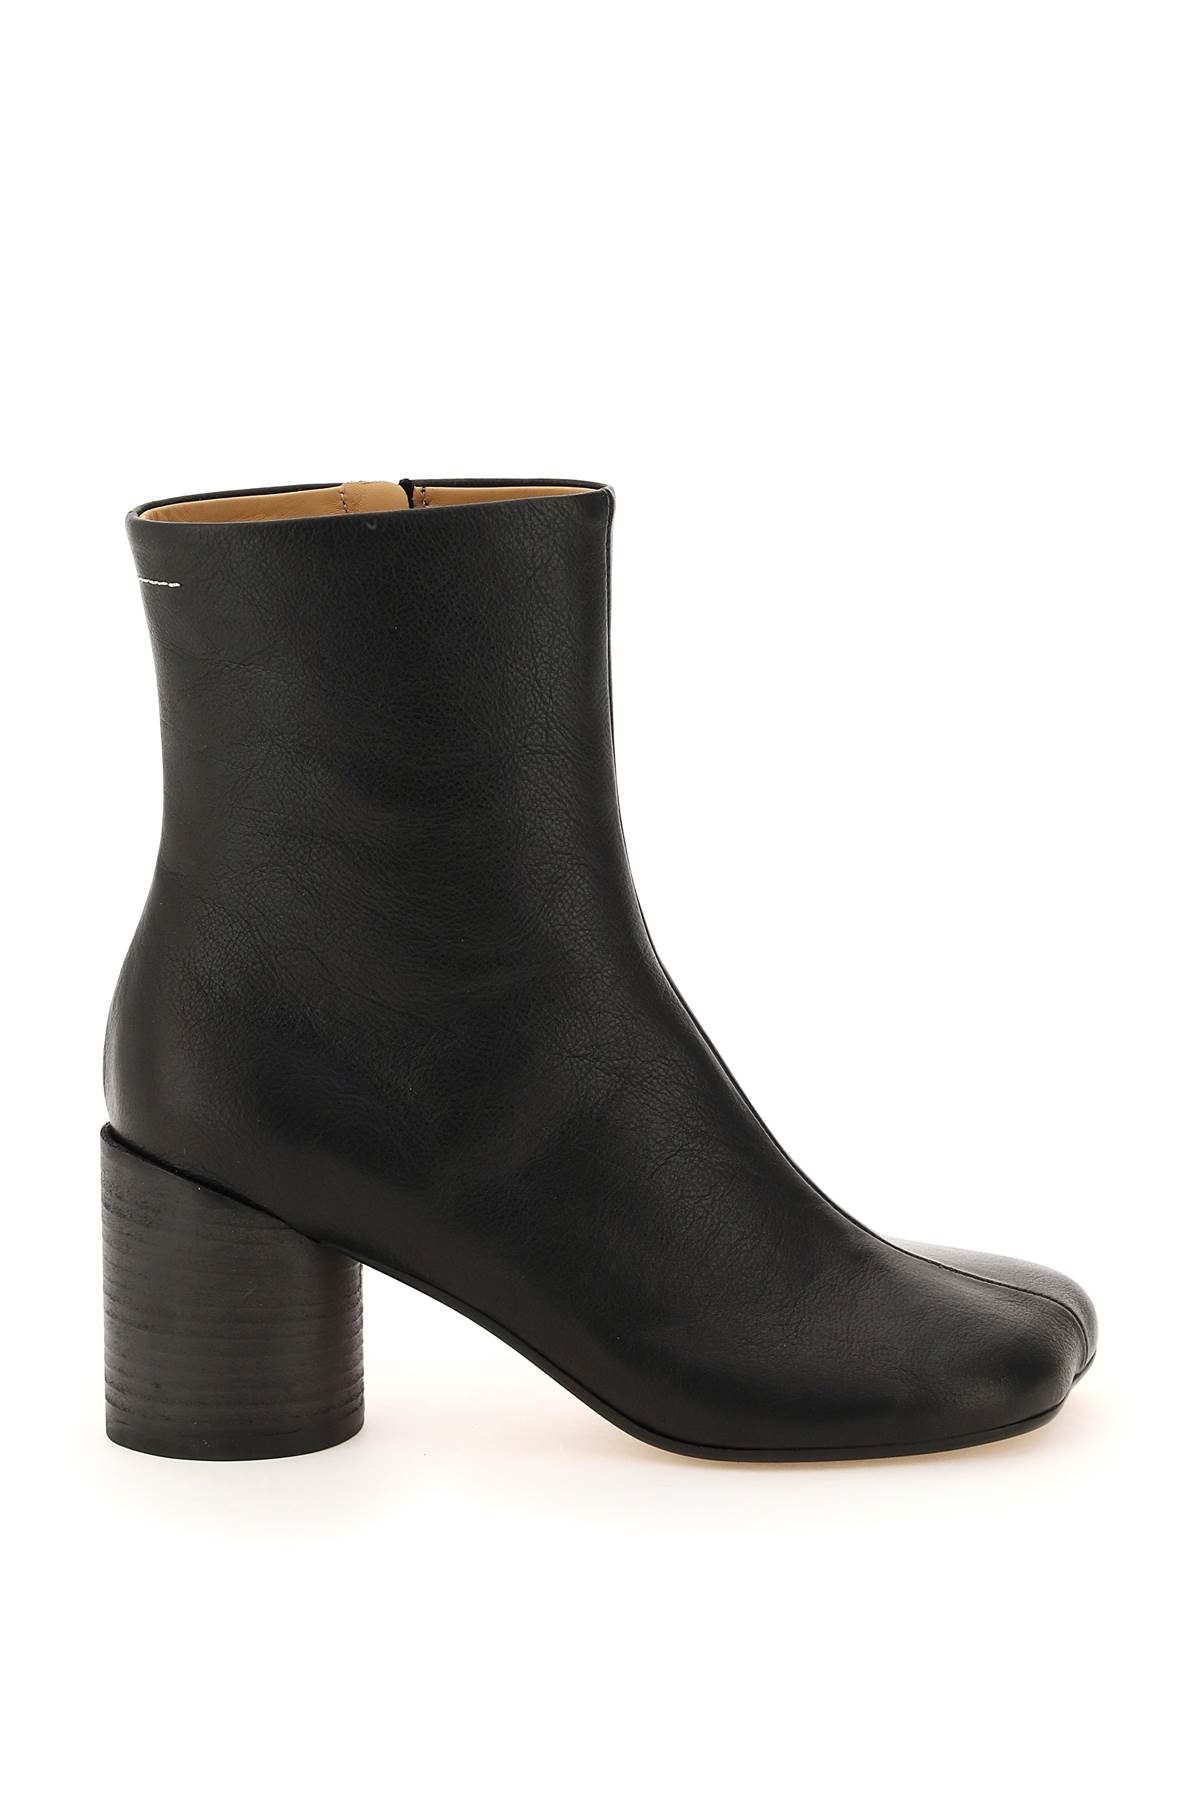 MM6 Maison Margiela Black Leather Ankle Boots | Smart Closet